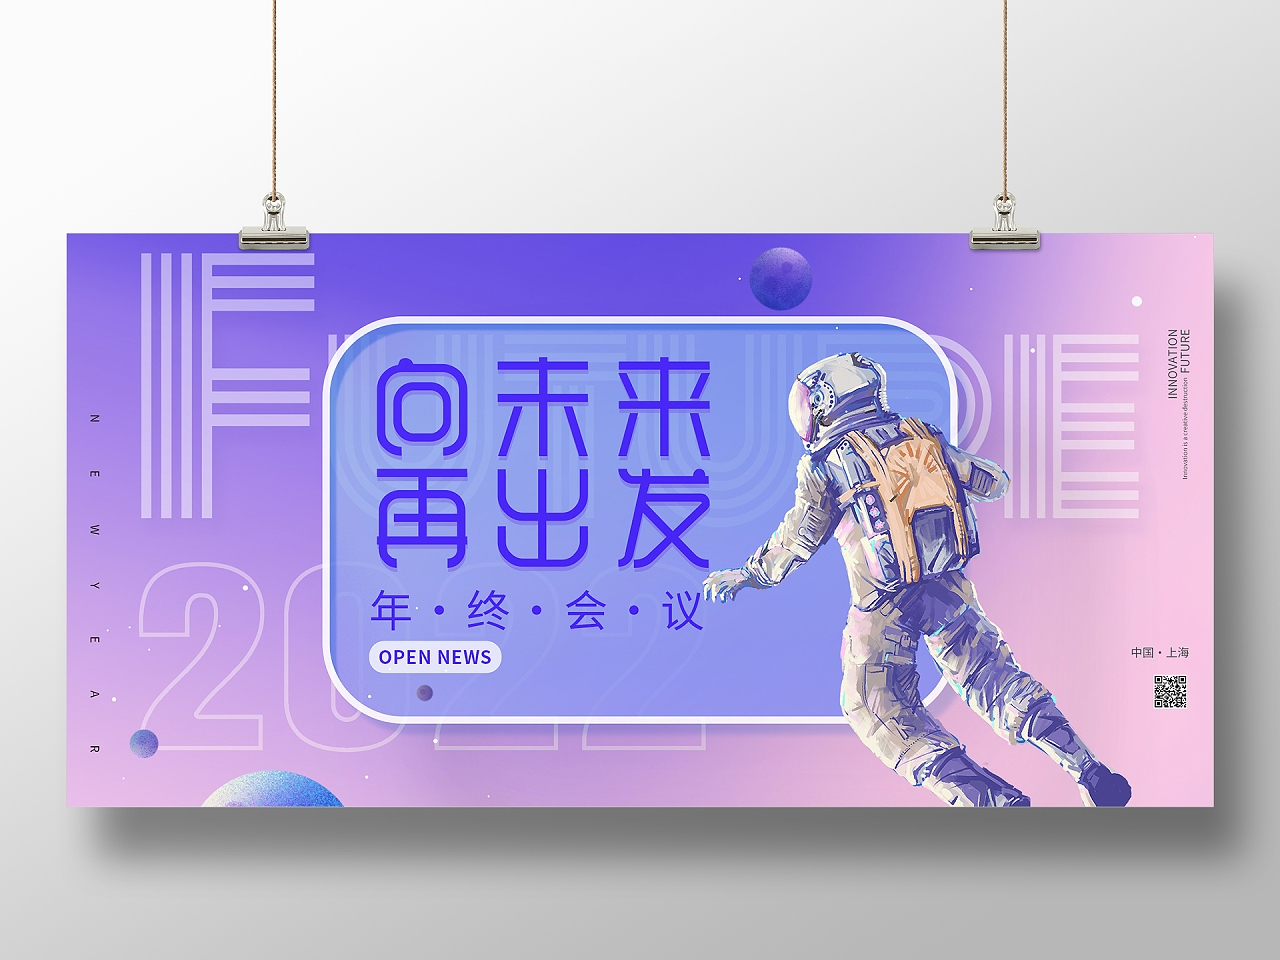 紫色酷炫未来2022宇航员科技毛玻璃海报酷炫向未来再出发展板简约酷炫宇航员毛玻璃年会邀请海报